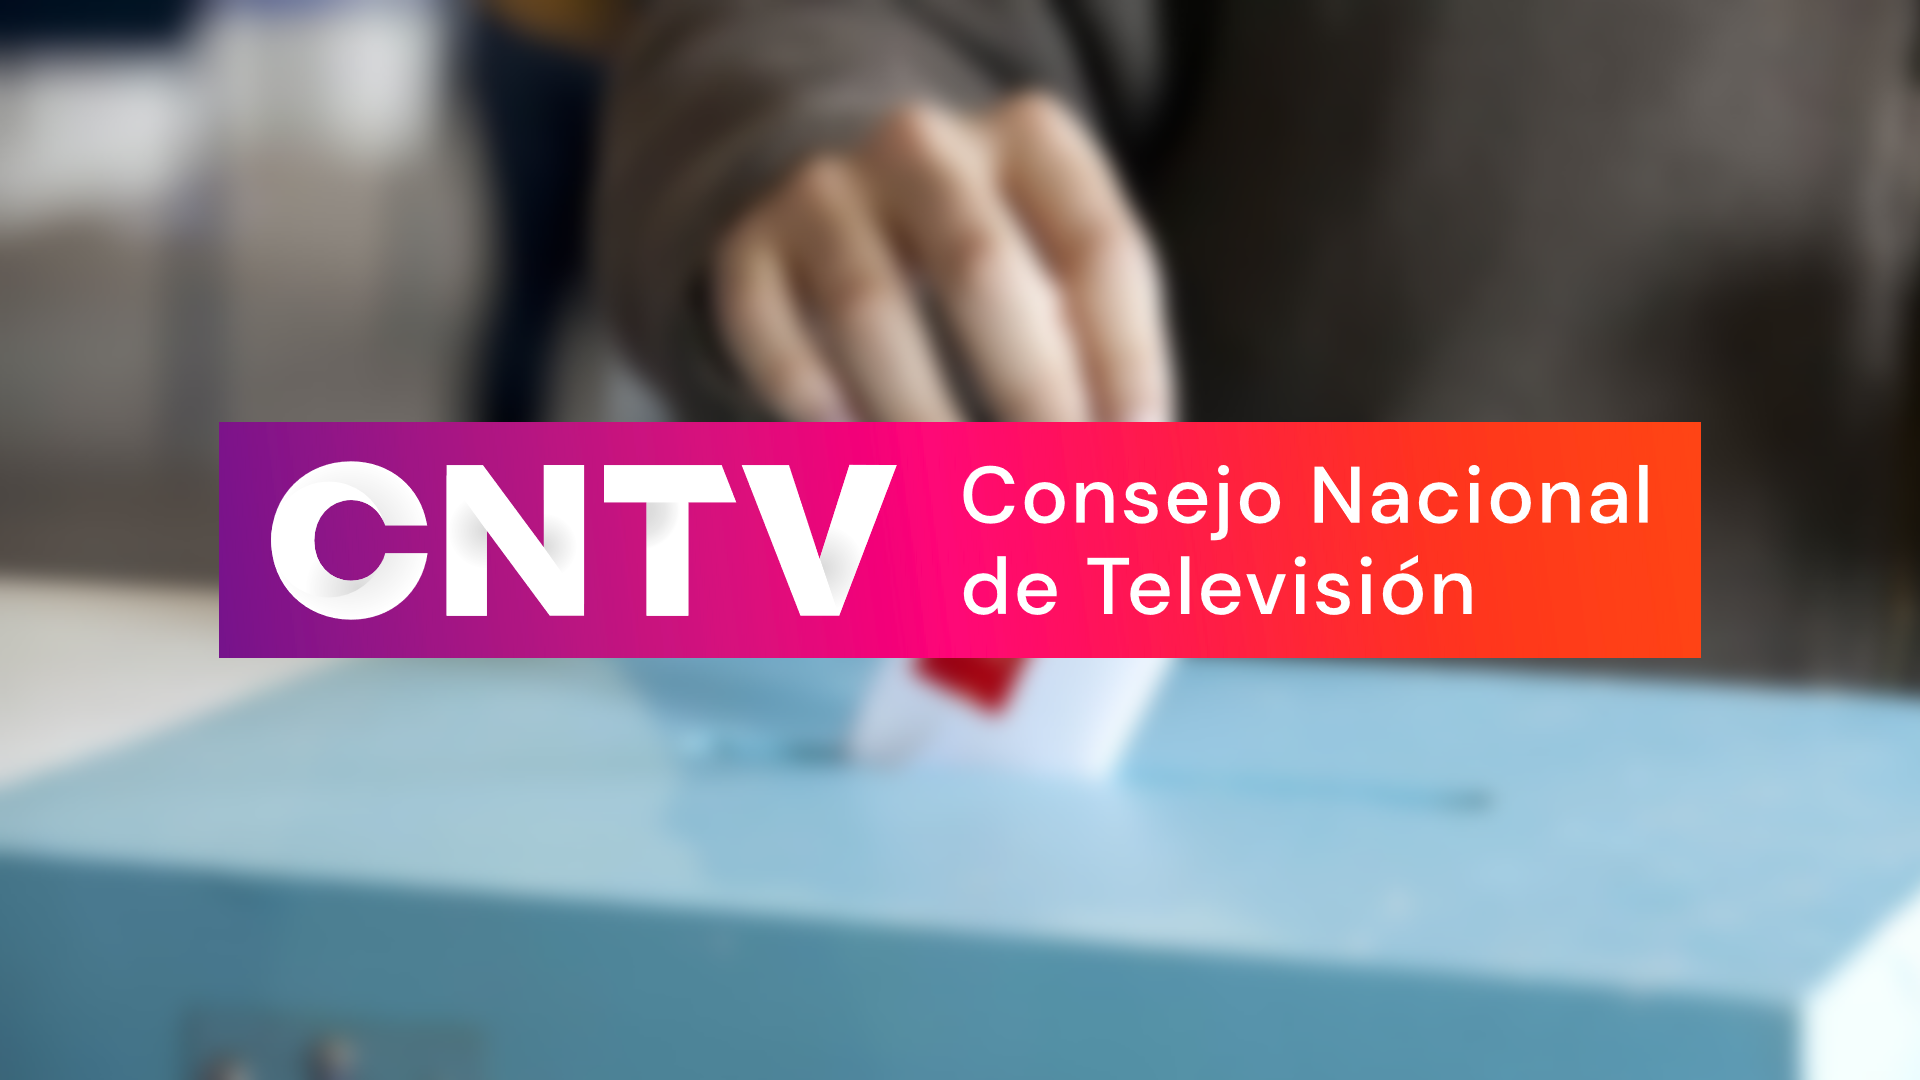 CNTV medio de comunicación